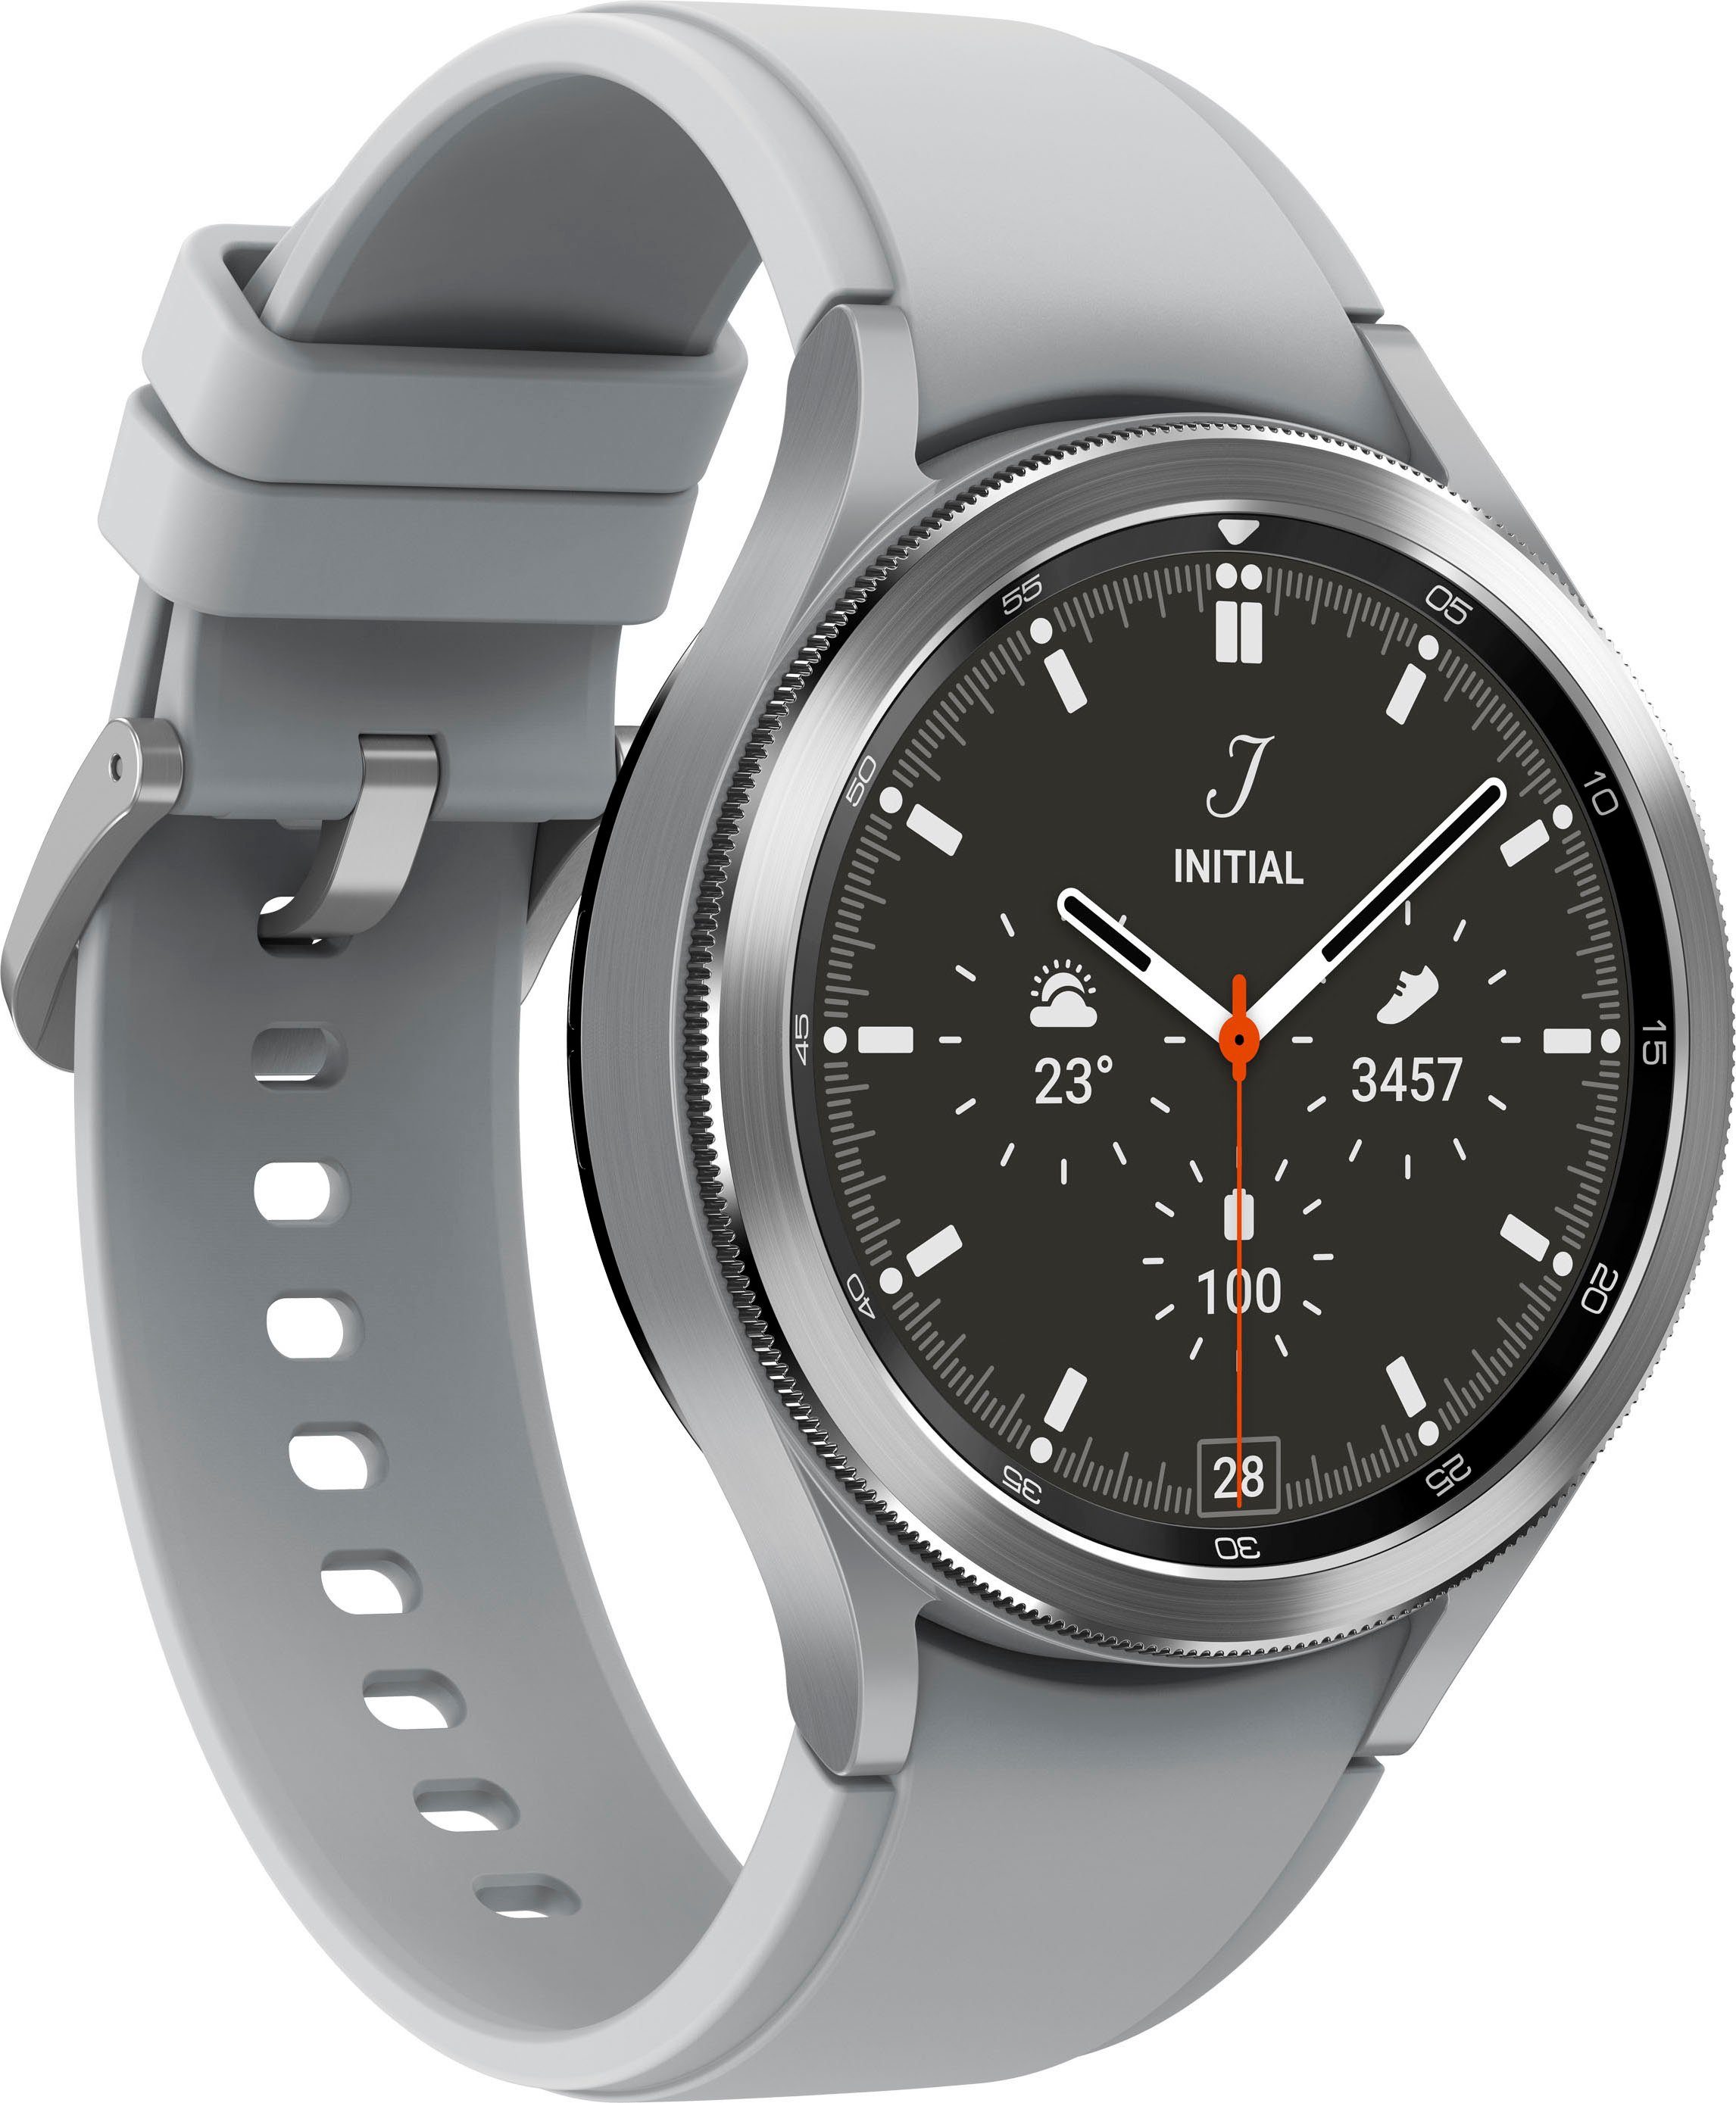 Samsung Galaxy Watch silberfarben | Fitness by OS Zoll, Gesundheitsfunktionen 4 Google), Uhr, Tracker, 46mm cm/1,4 LTE Fitness Smartwatch silberfarben classic (3,46 Wear